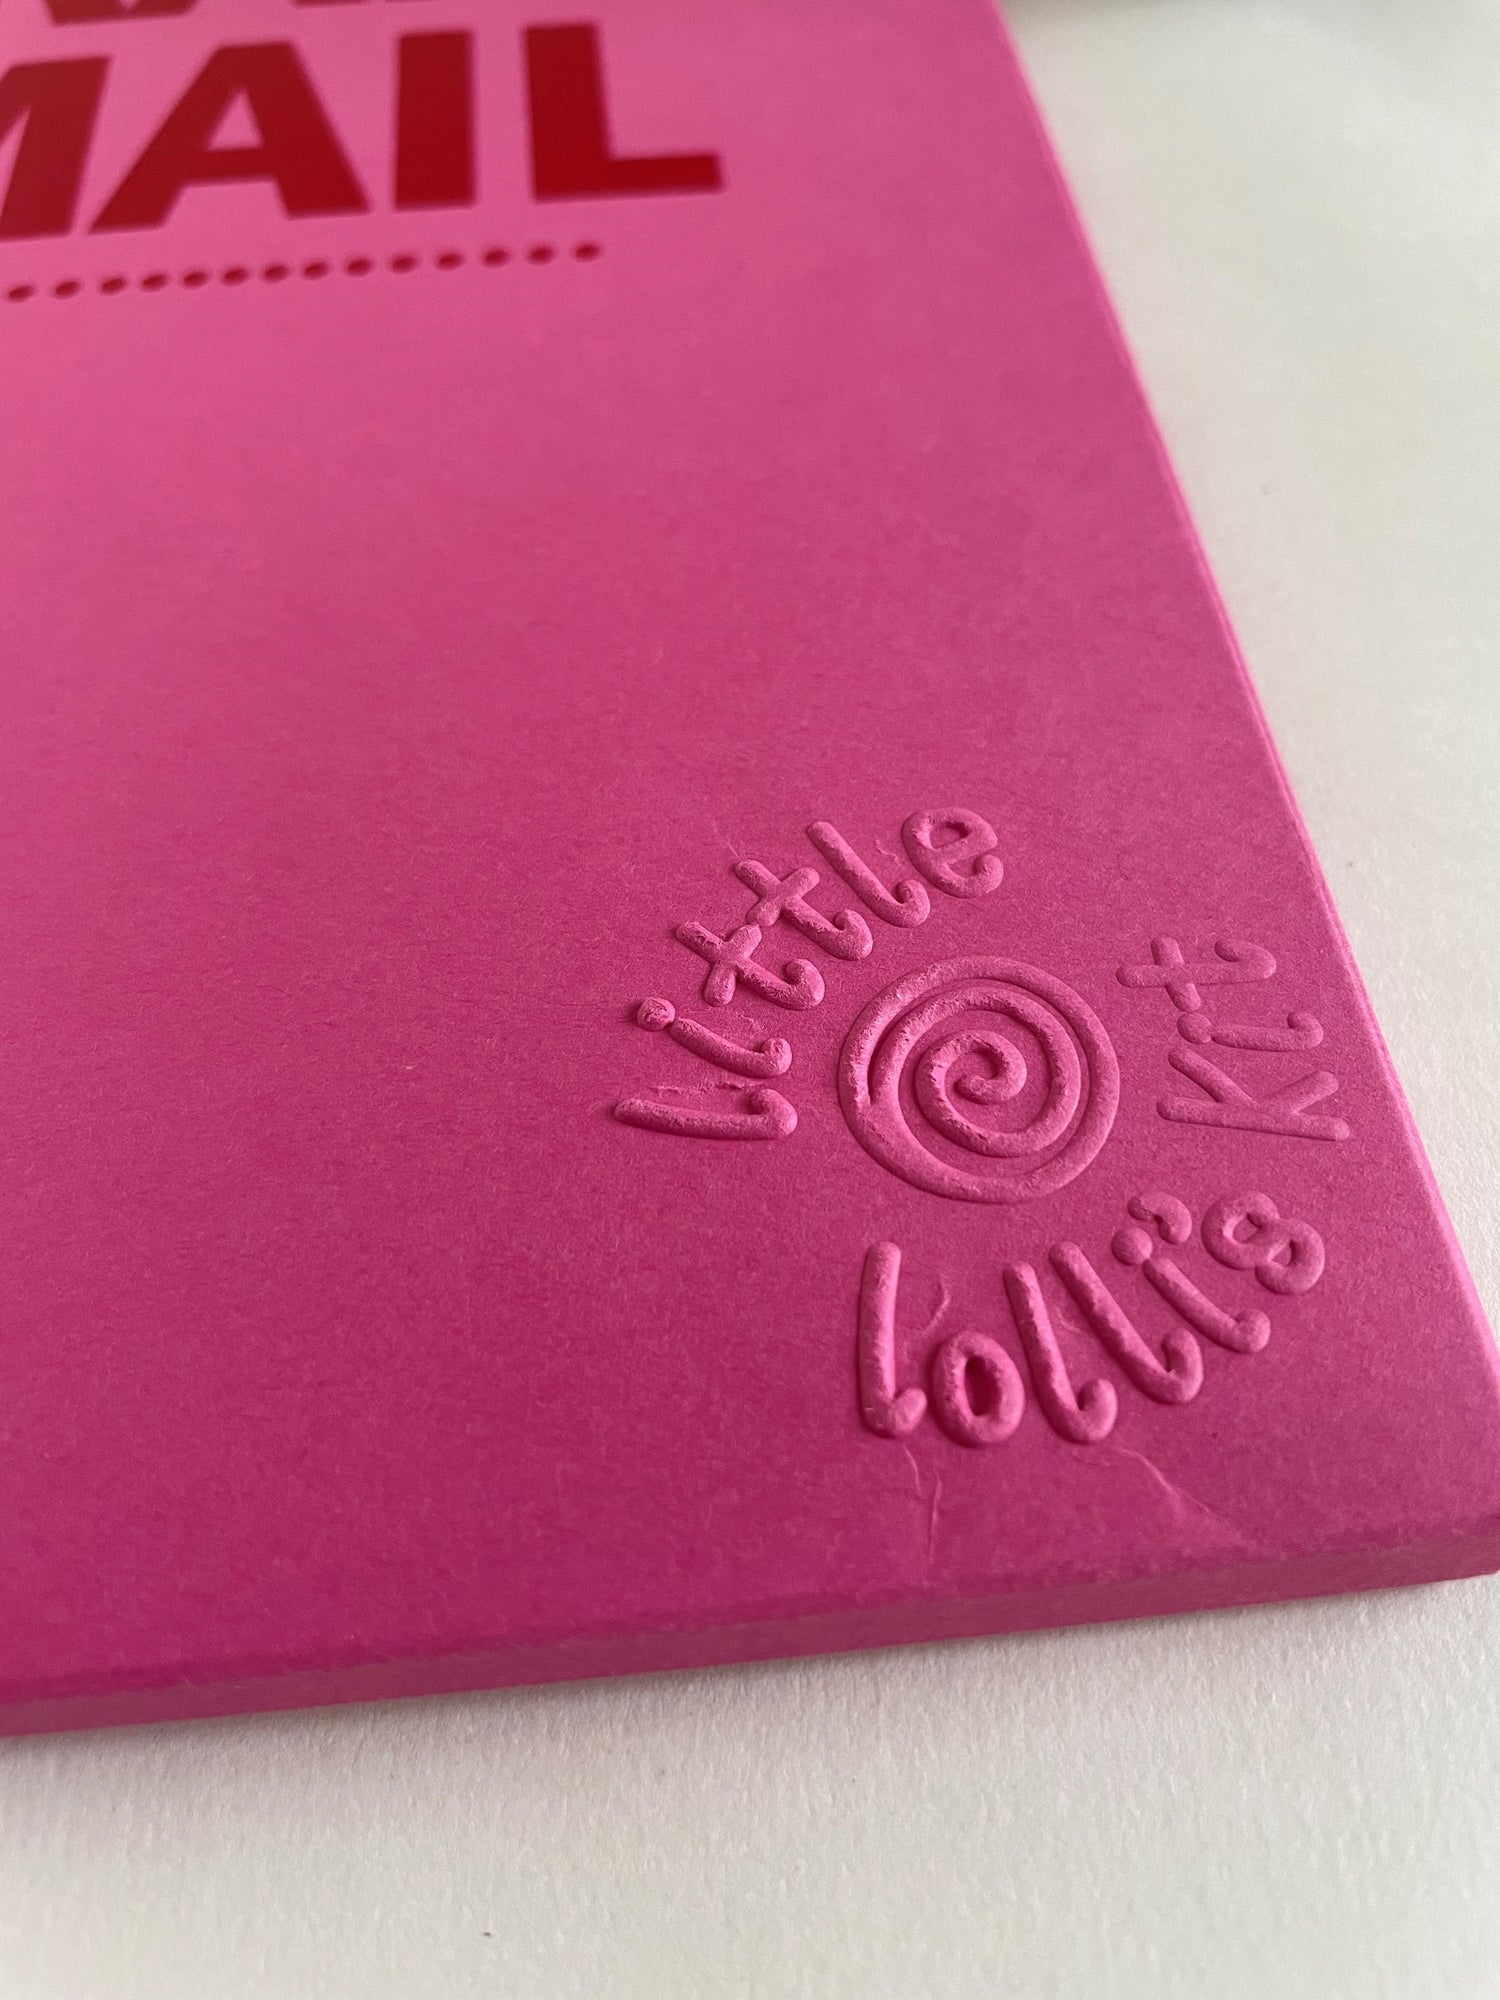 embossed stationery folder for 'little lollis'